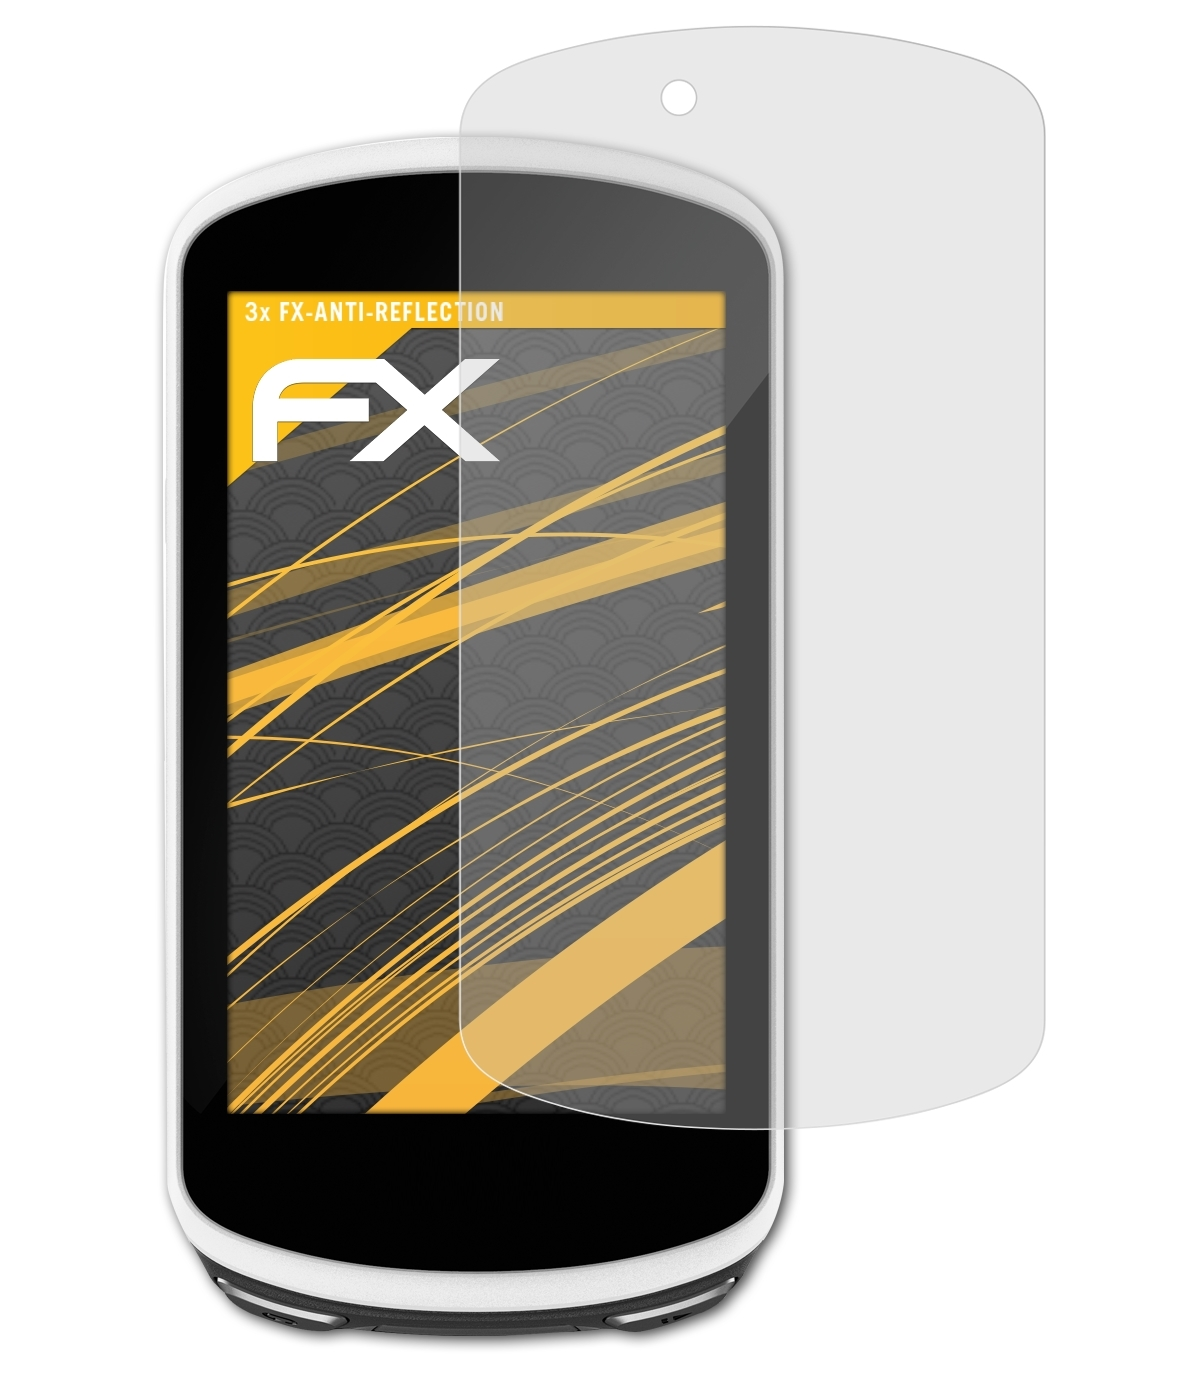 Displayschutz(für 3x Edge ATFOLIX 1030) FX-Antireflex Garmin